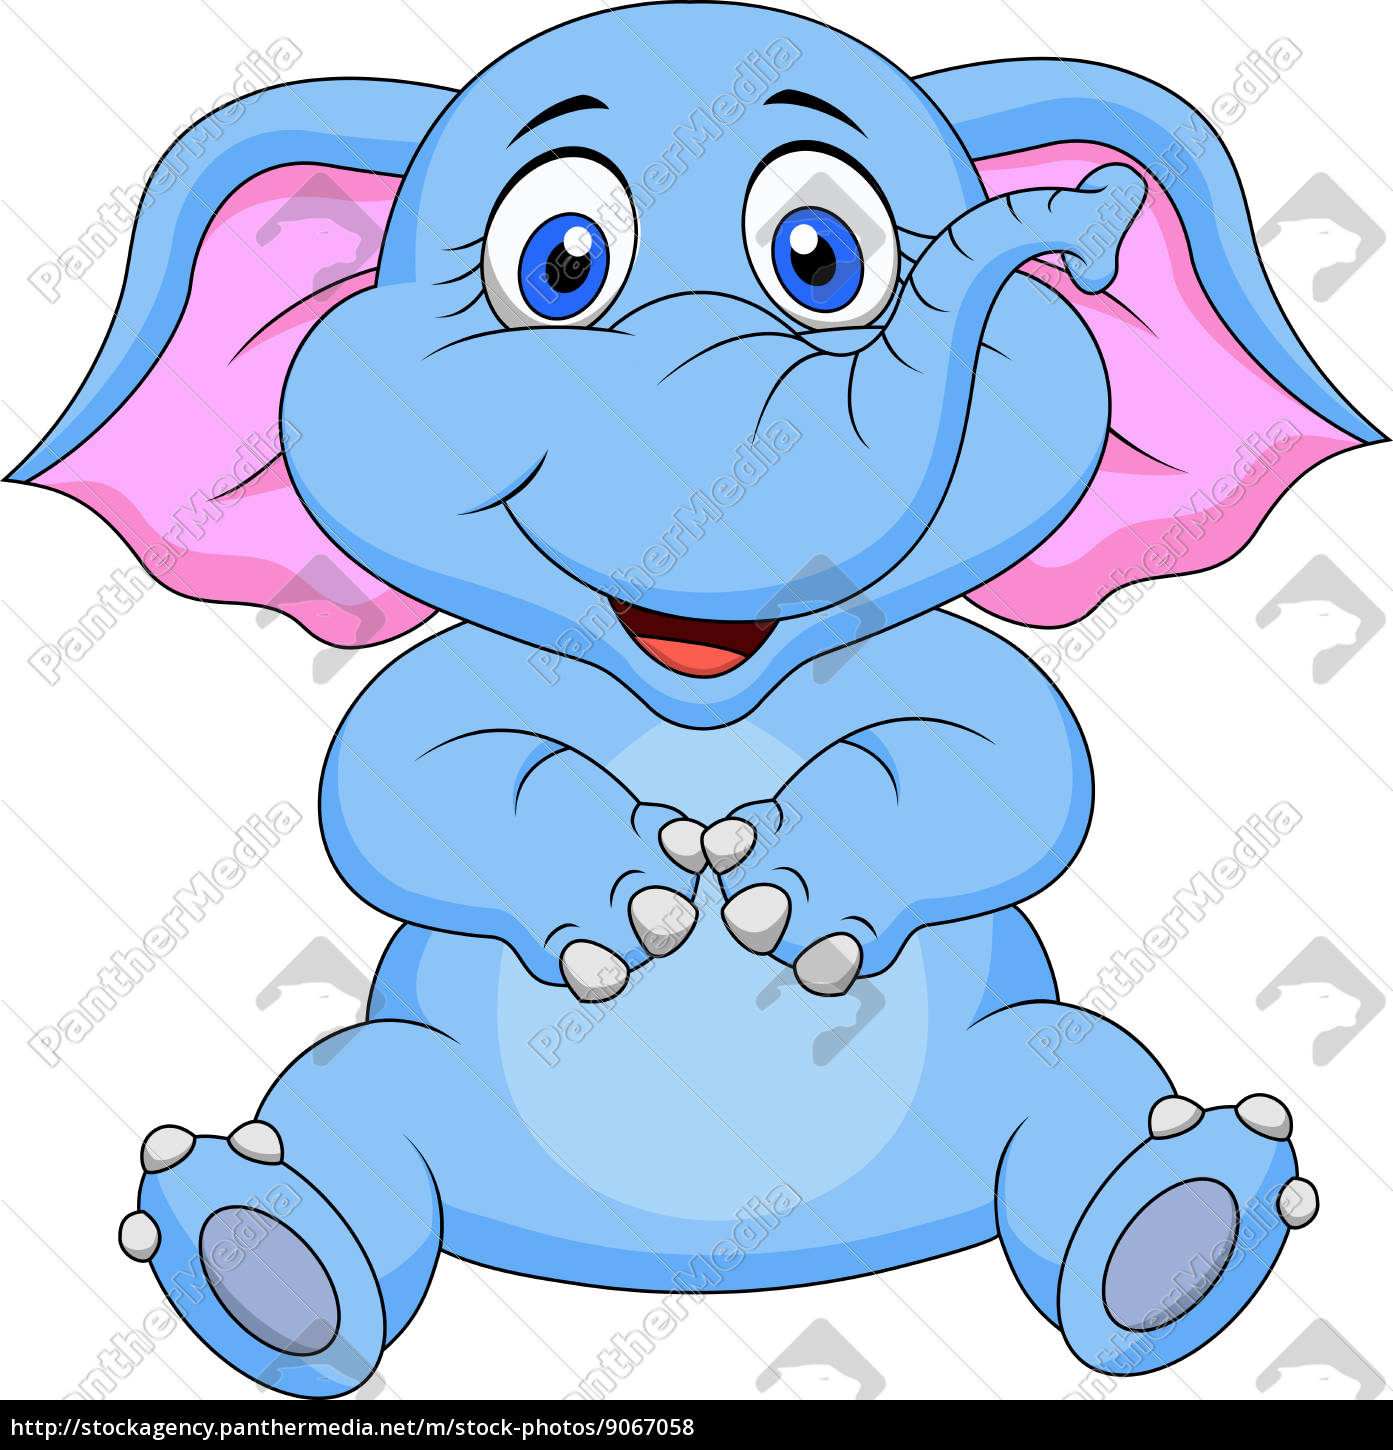 Simpatico elefante cartone animato seduto - Stockphoto #9067058